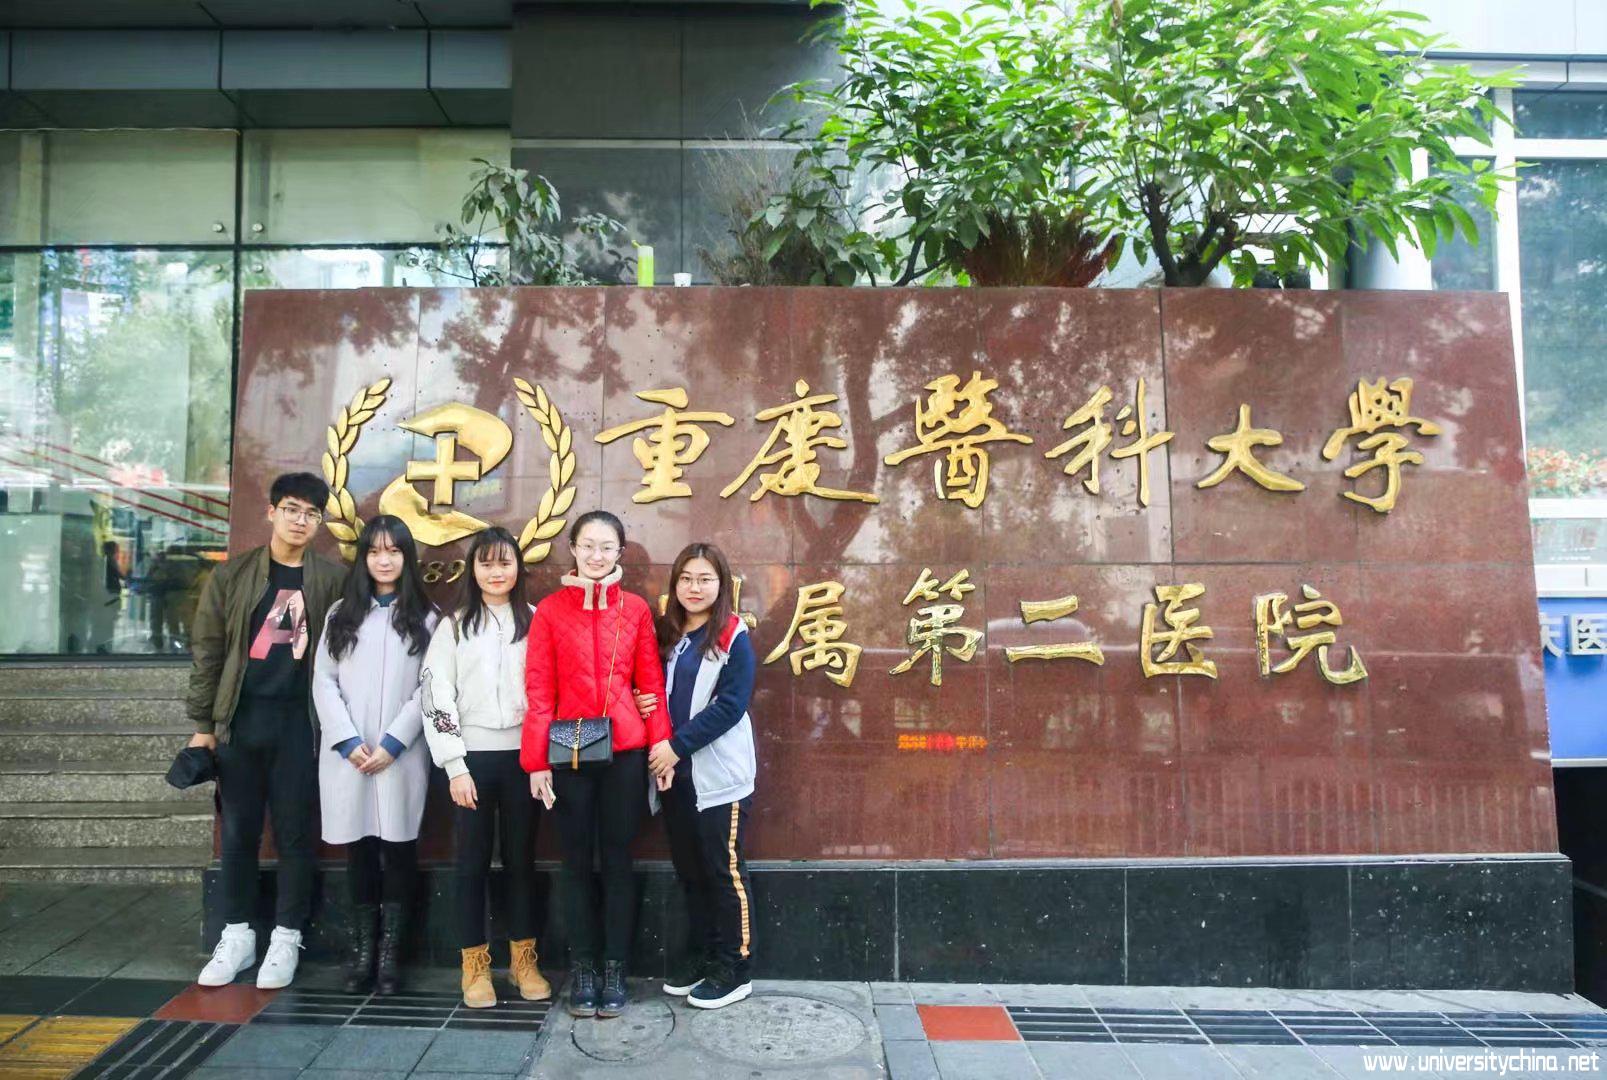 大连理工大学“渝践不愚见”社会实践团队定址重庆开始为期五天的寒假社会实践活动